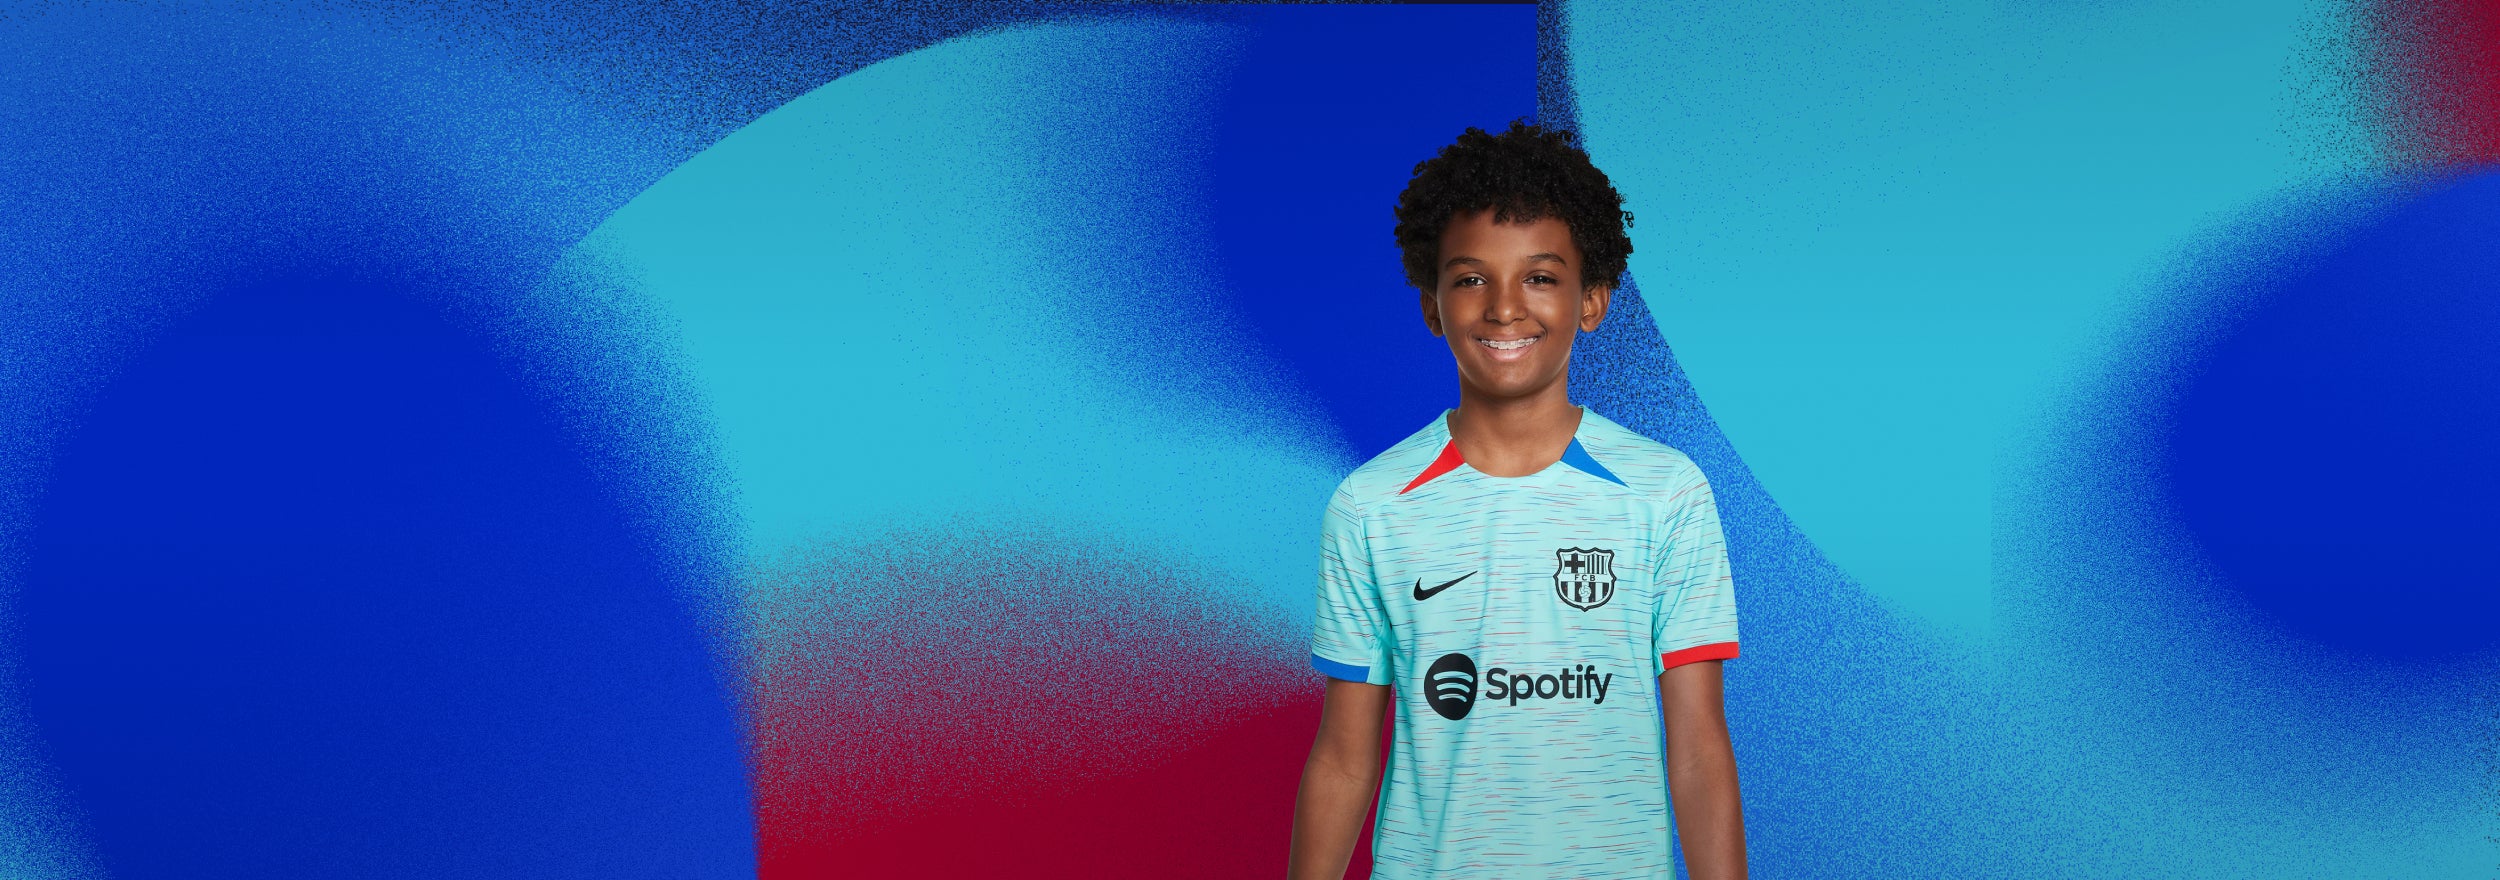 Camiseta Primera Equipacion niños FC Barcelona 2021/22 - Barcelona